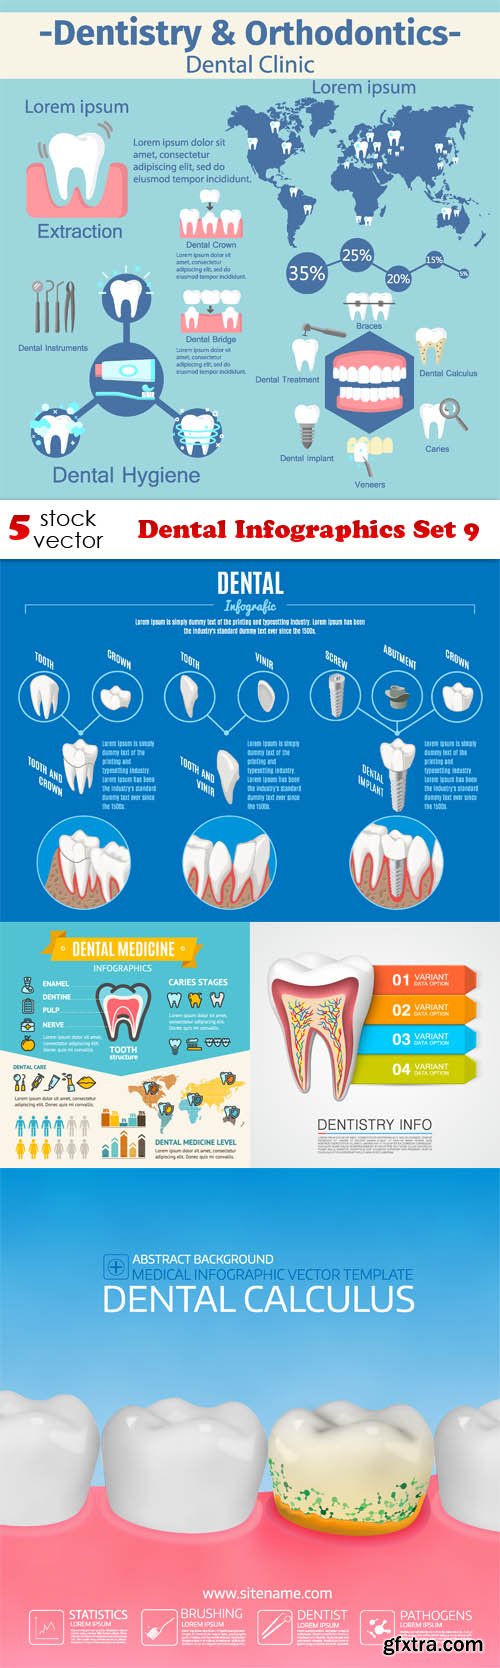 Vectors - Dental Infographics Set 9